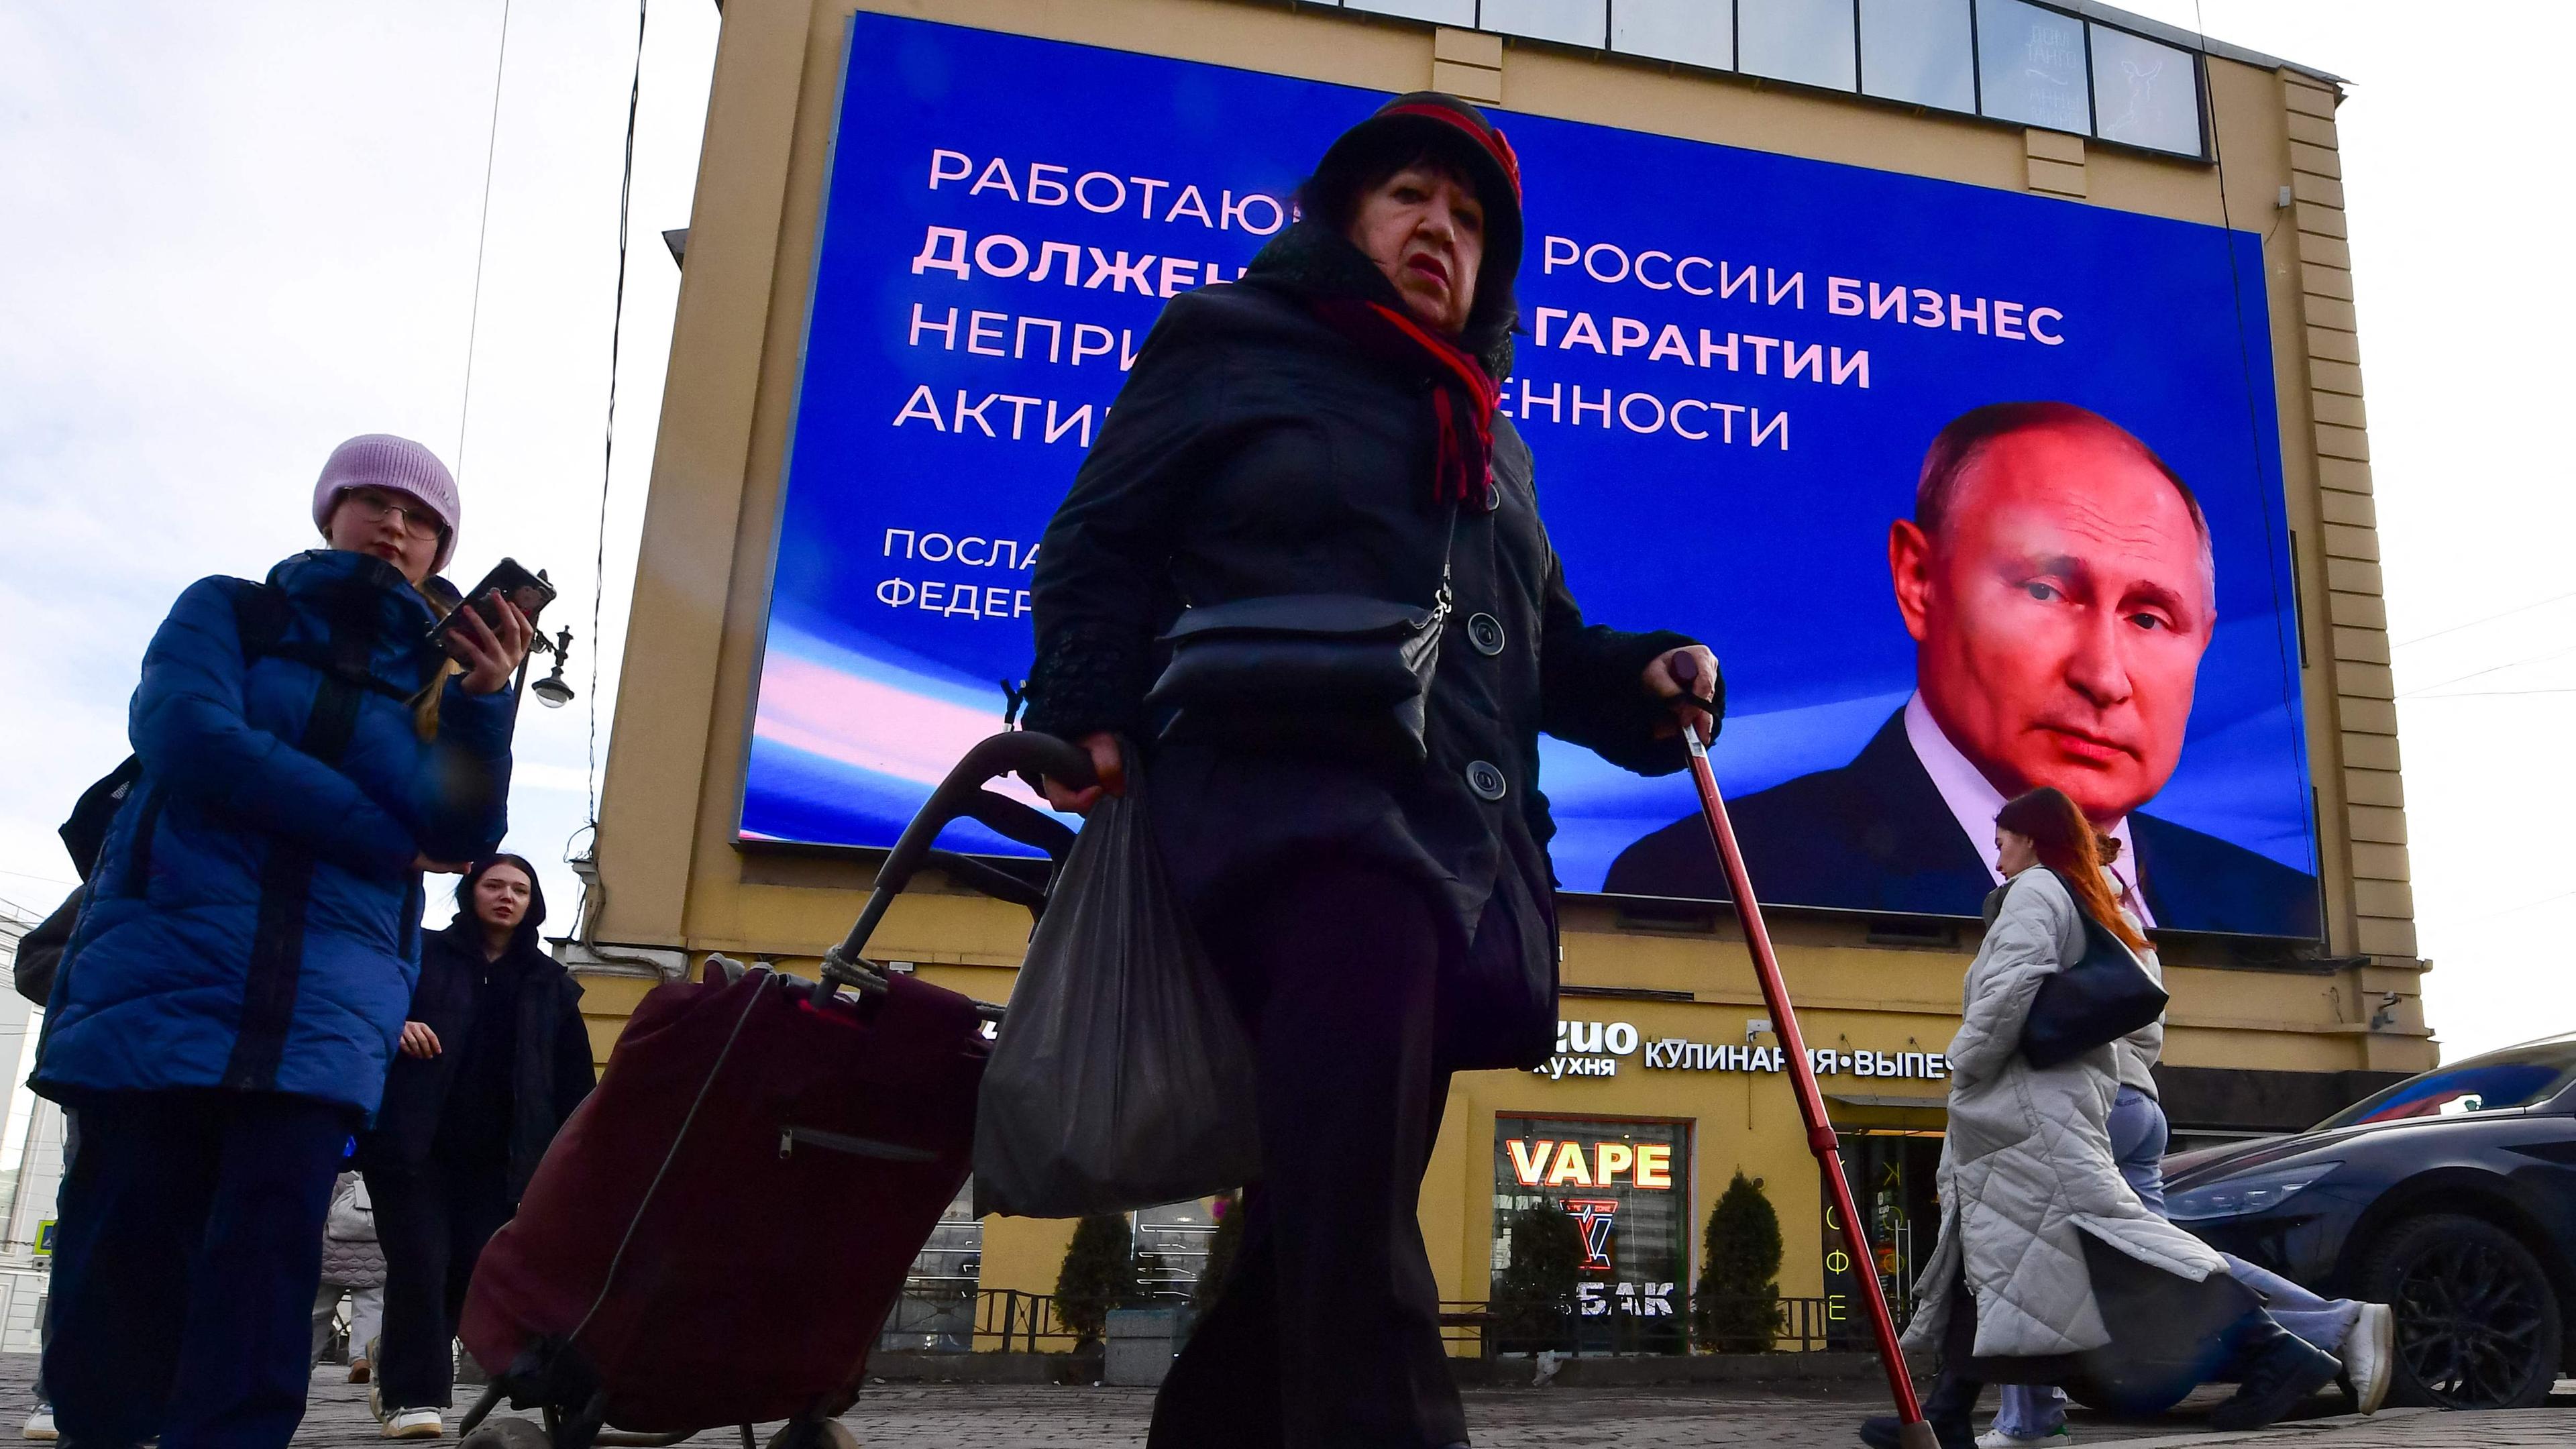 Passanten in der Fußgängerzone in Sankt Petersburg. Im Hintergrund ein großes digitales Werbeplakat von Wladimir Putin.